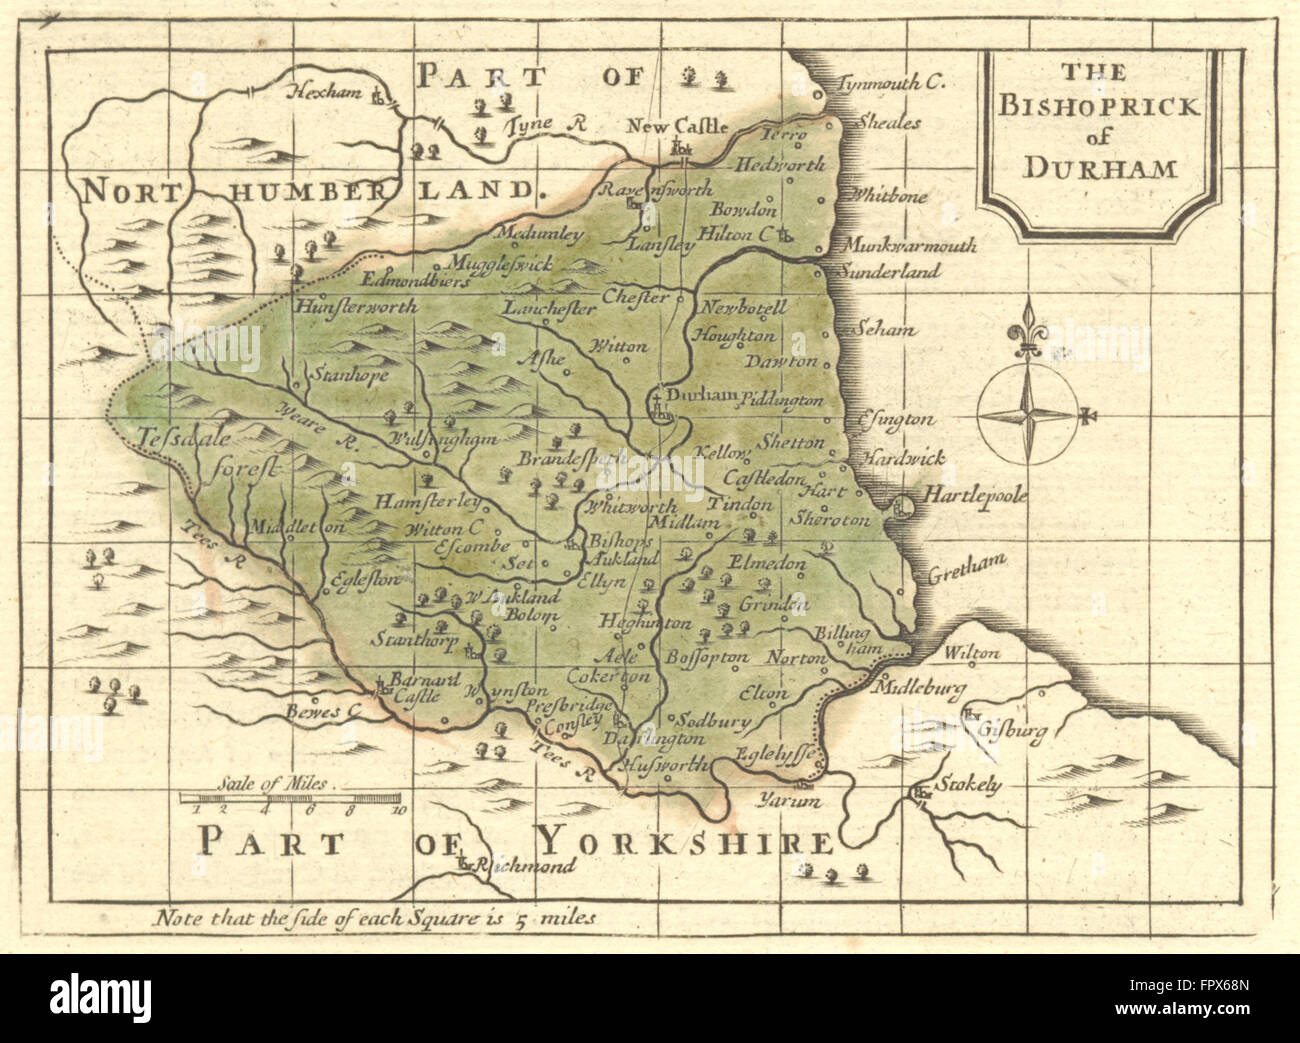 DURHAM: Bishoprick von: Grose Verkäufer, 1795 Antike Landkarte Stockfoto